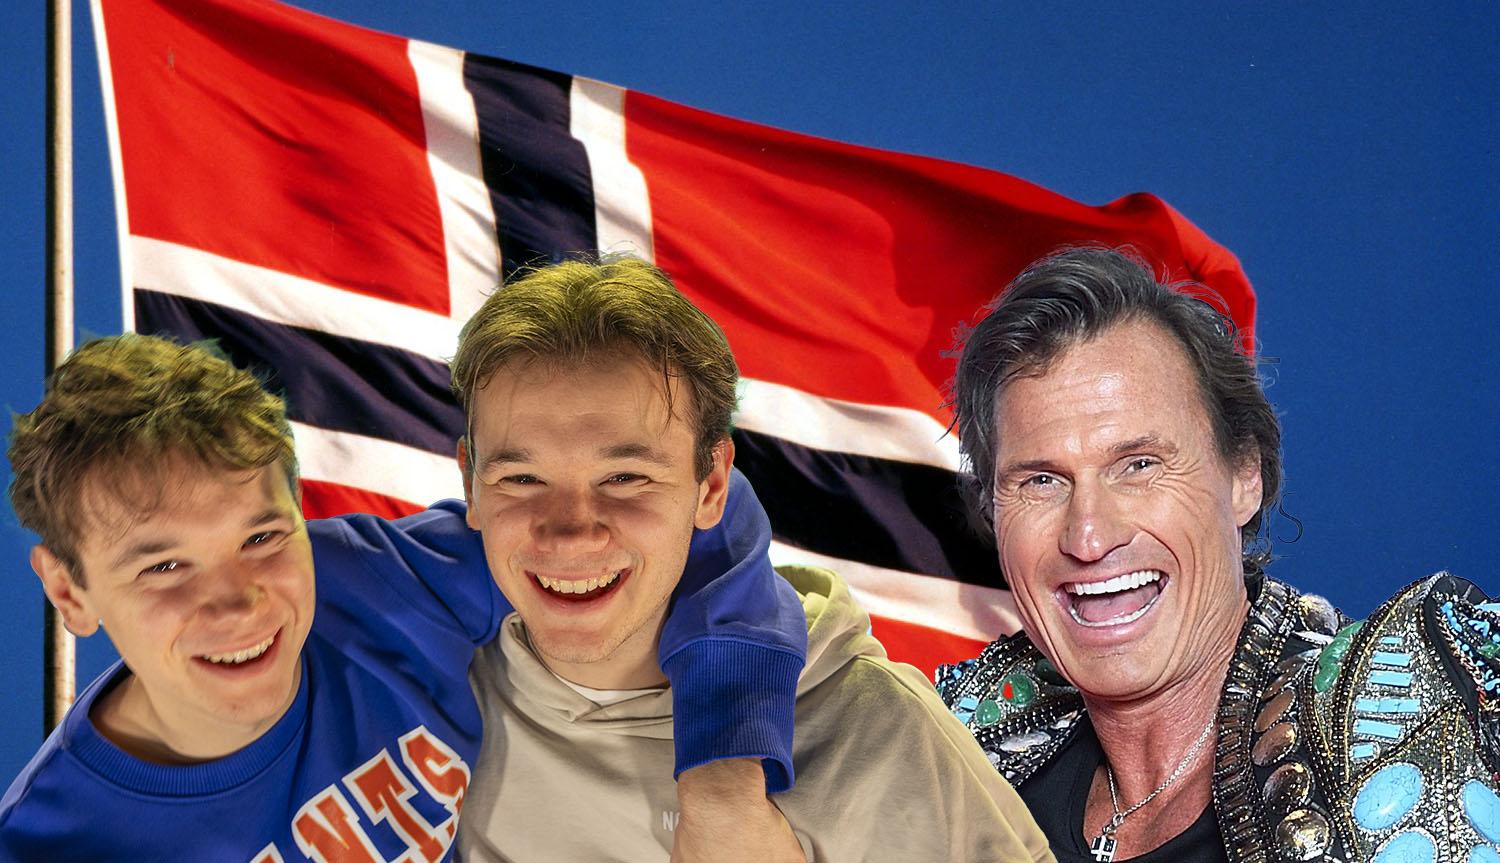 Marcus och Martinus, Petter Stordalen – bara ett par av alla norrmän som försöker göra oss rödvitblå.